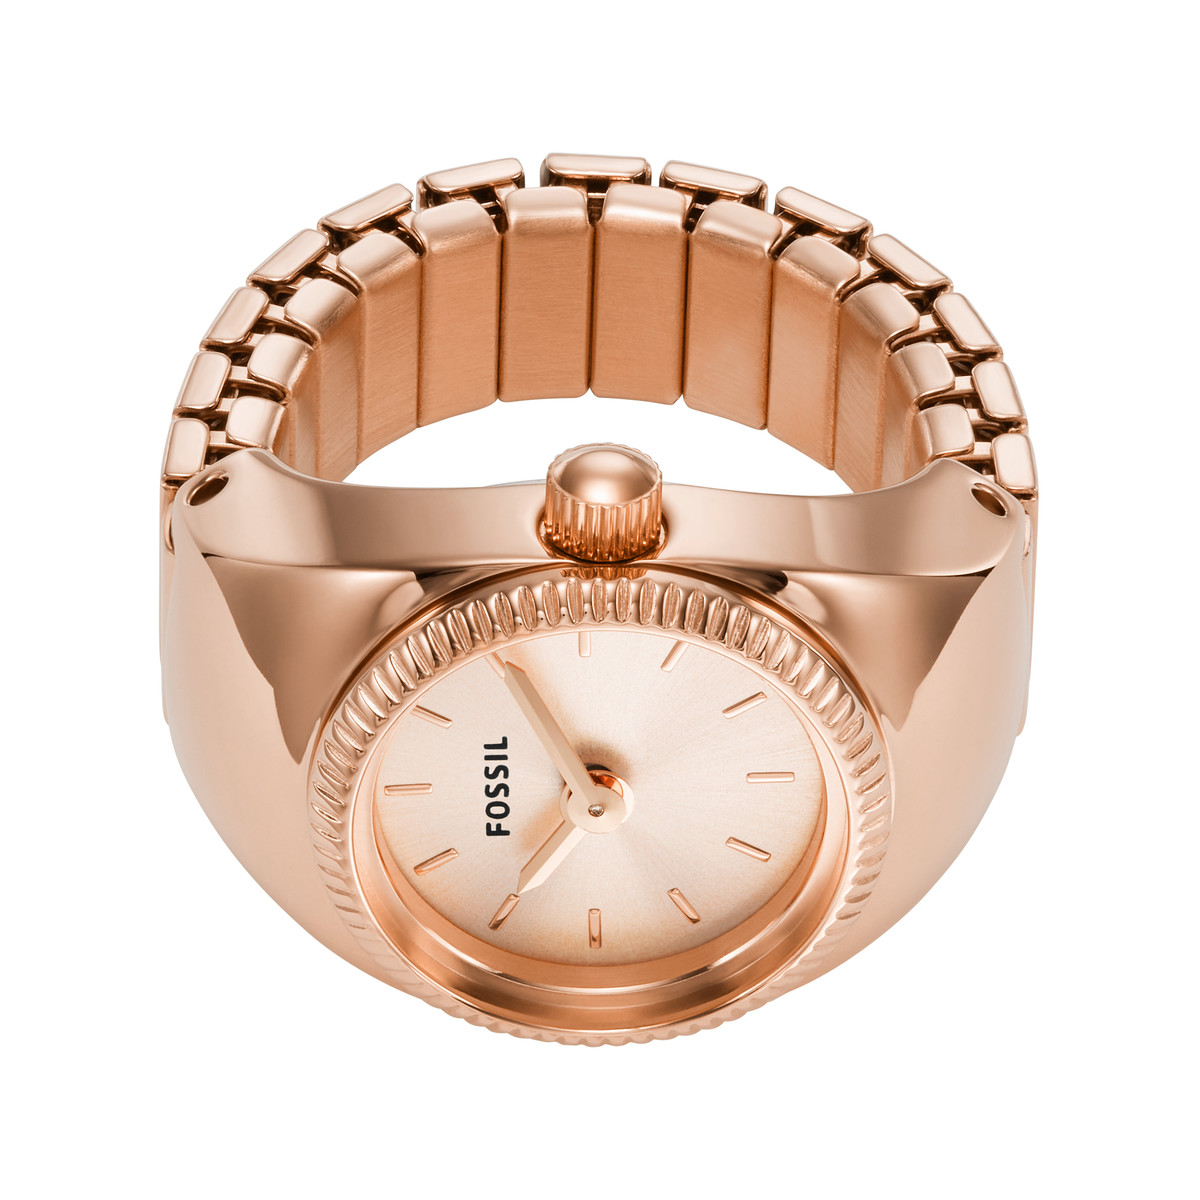 Montre FOSSIL watch ring femme bracelet acier inoxydable doré rose - vue 2